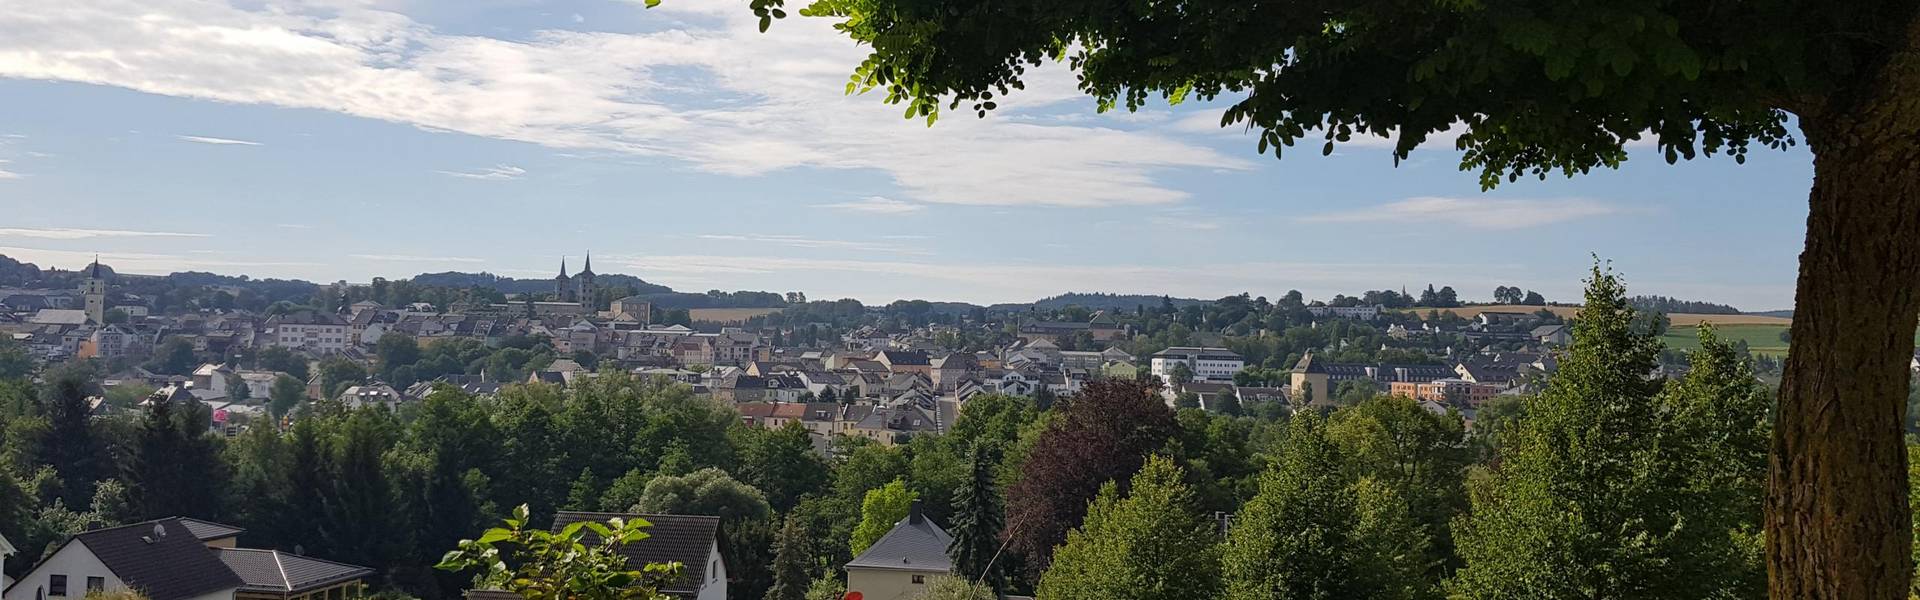 Blick auf die Stadt Schleiz von der Bergkirche aus ©Landratsamt Saale-Orla-Kreis, Pressestelle